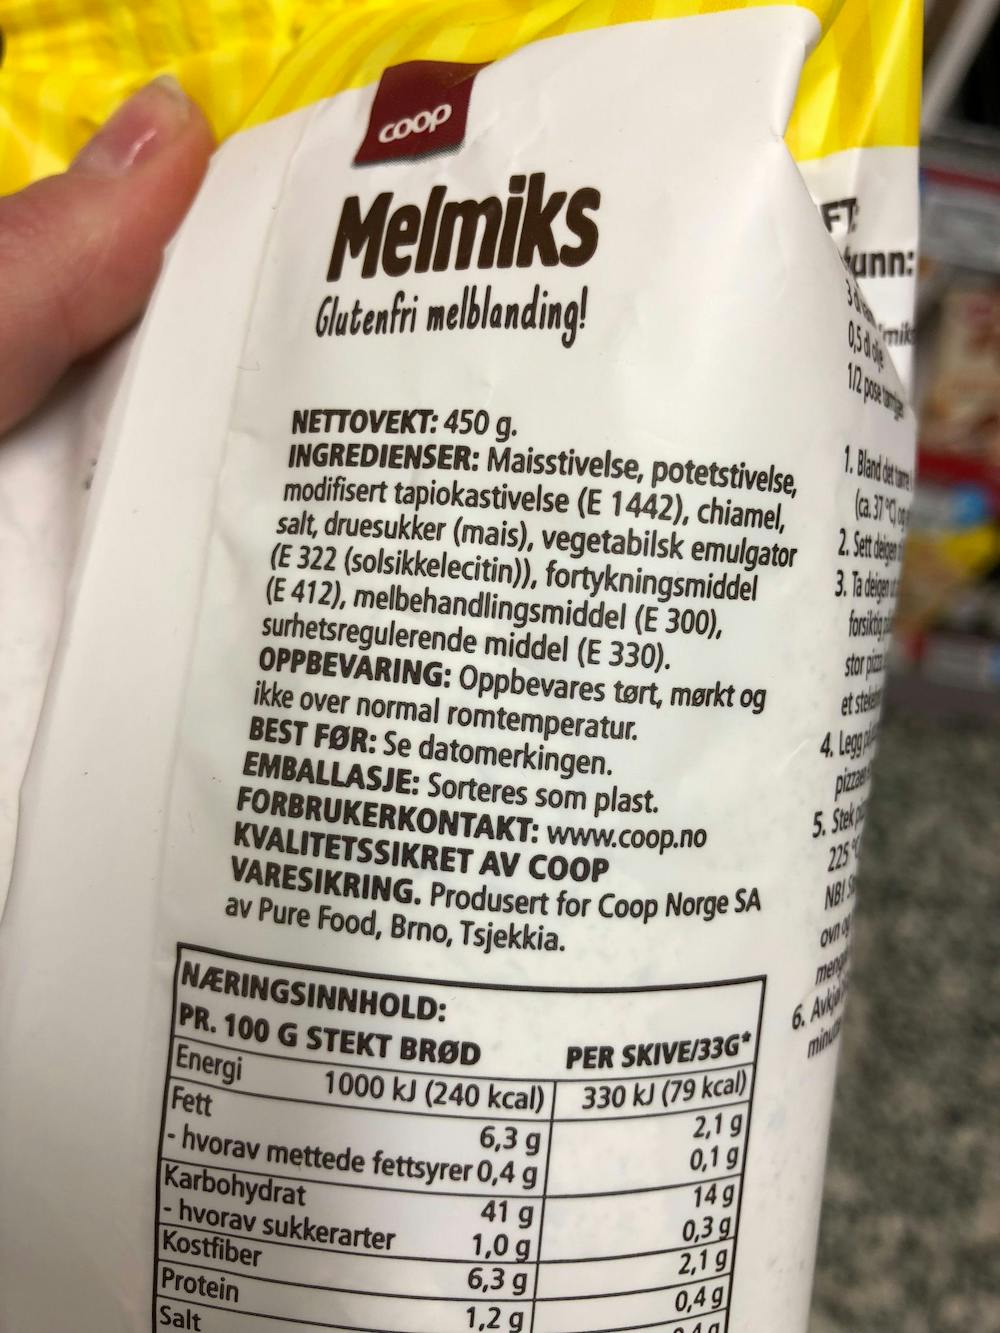 Ingredienslisten til Coop Melmiks glutenfri melblanding